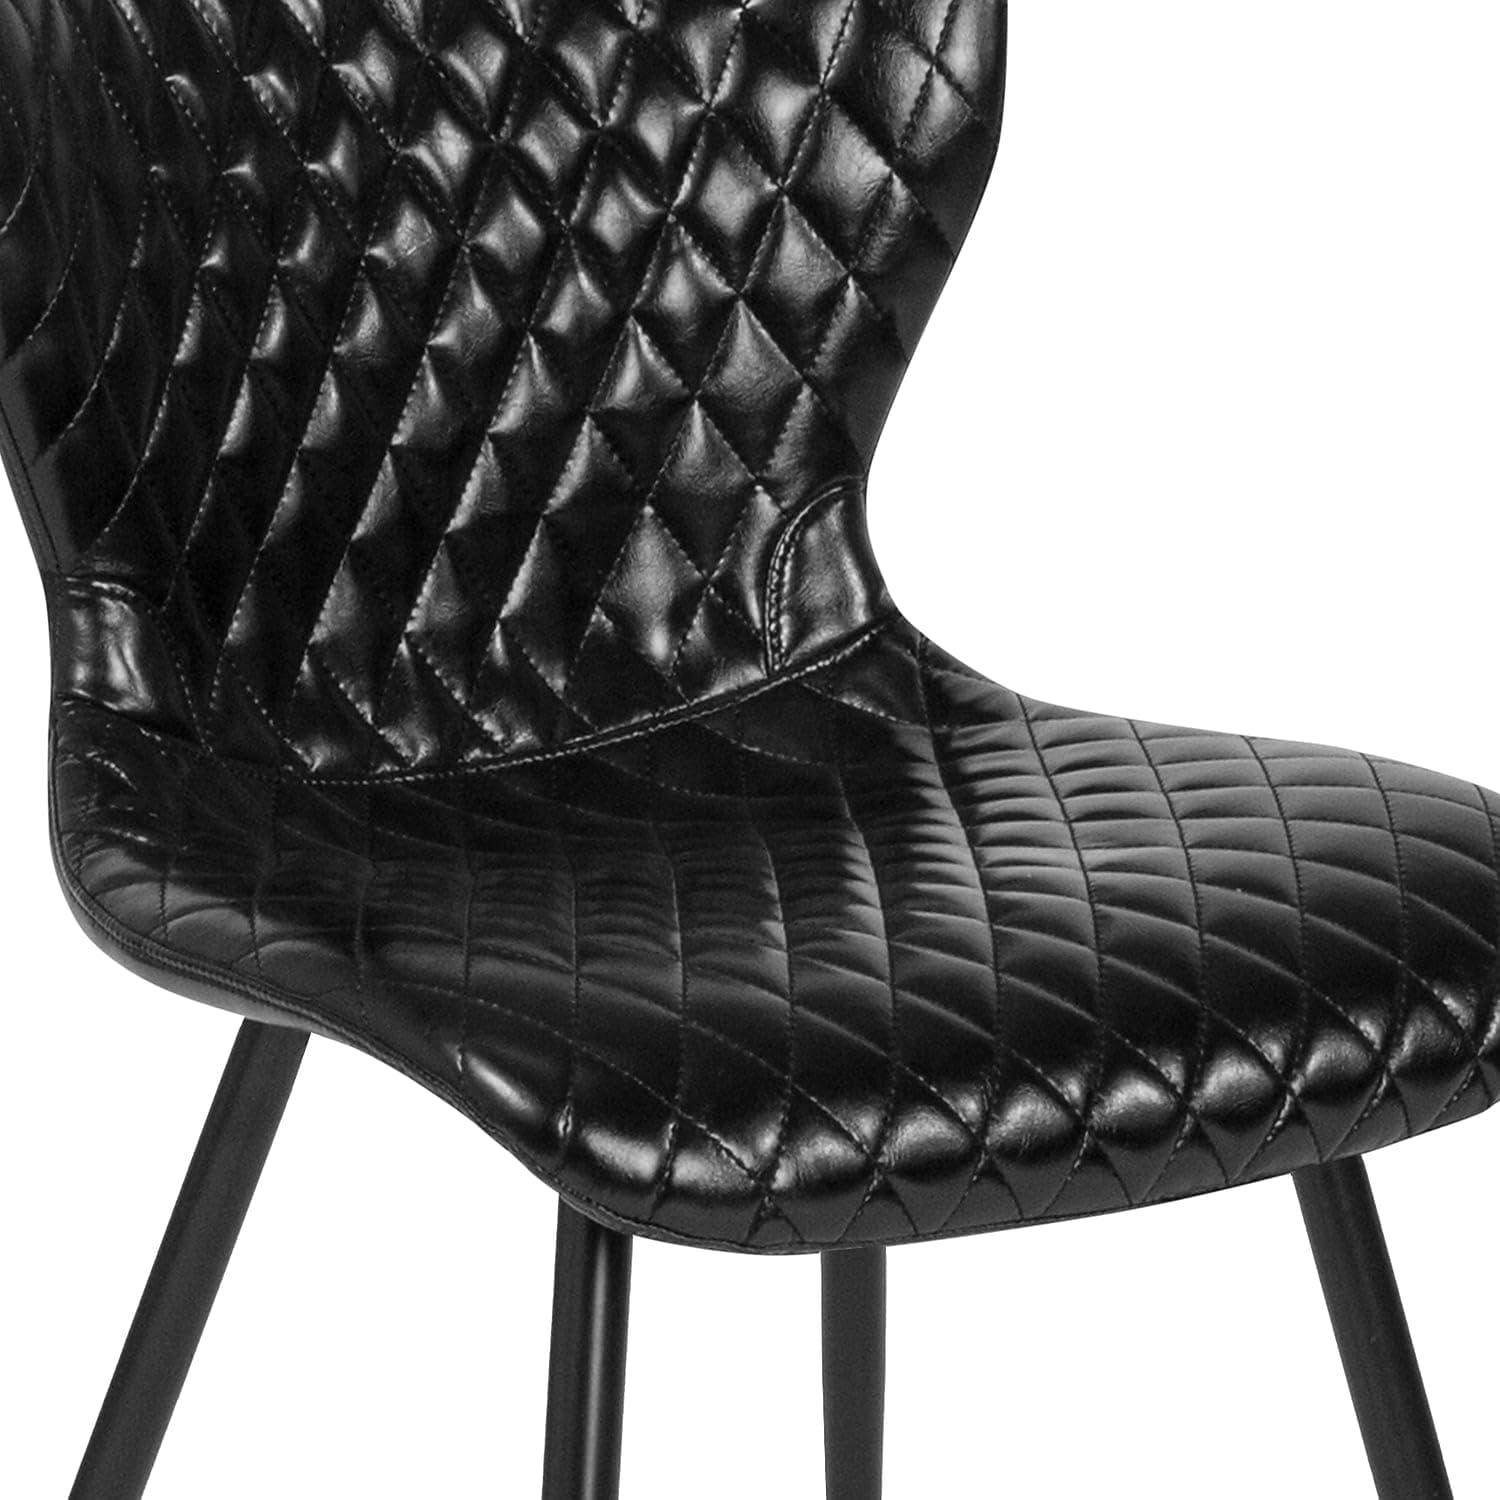 Elegant Bristol Black Vinyl and Metal Side Chair